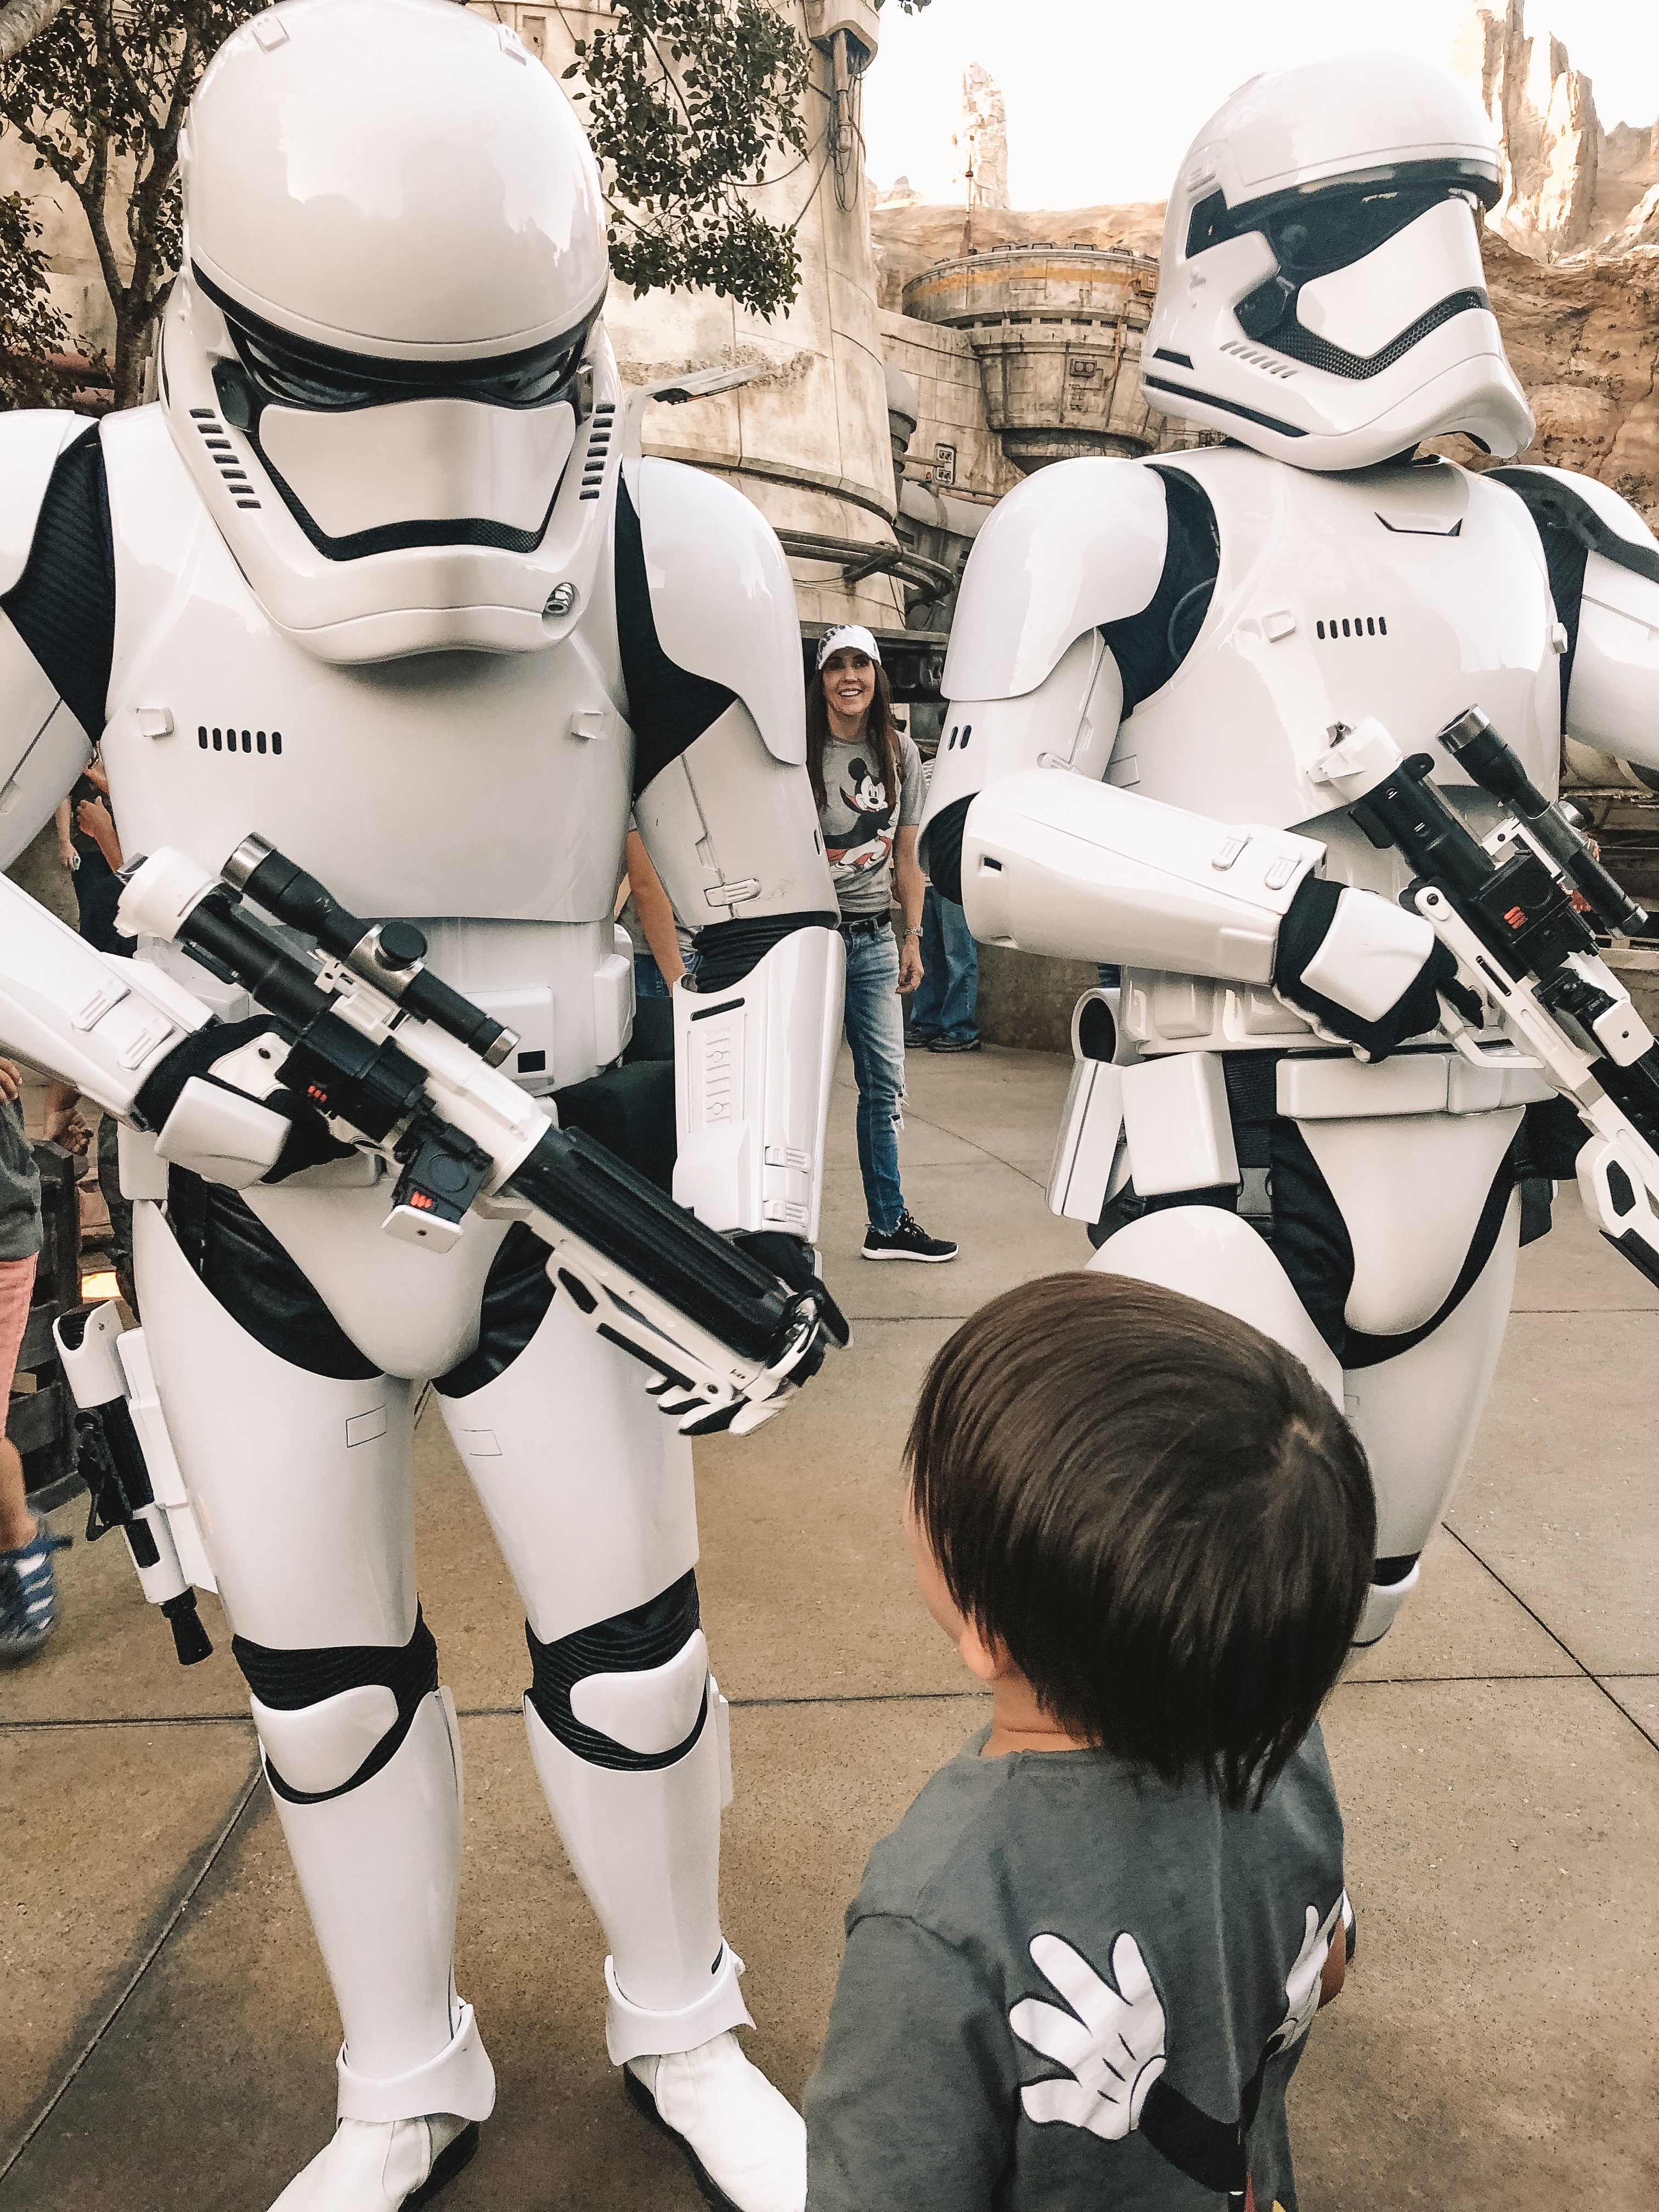 meeting real stormtroopers inside Disneyland's new Star Wars Land #starwars #disneyland 